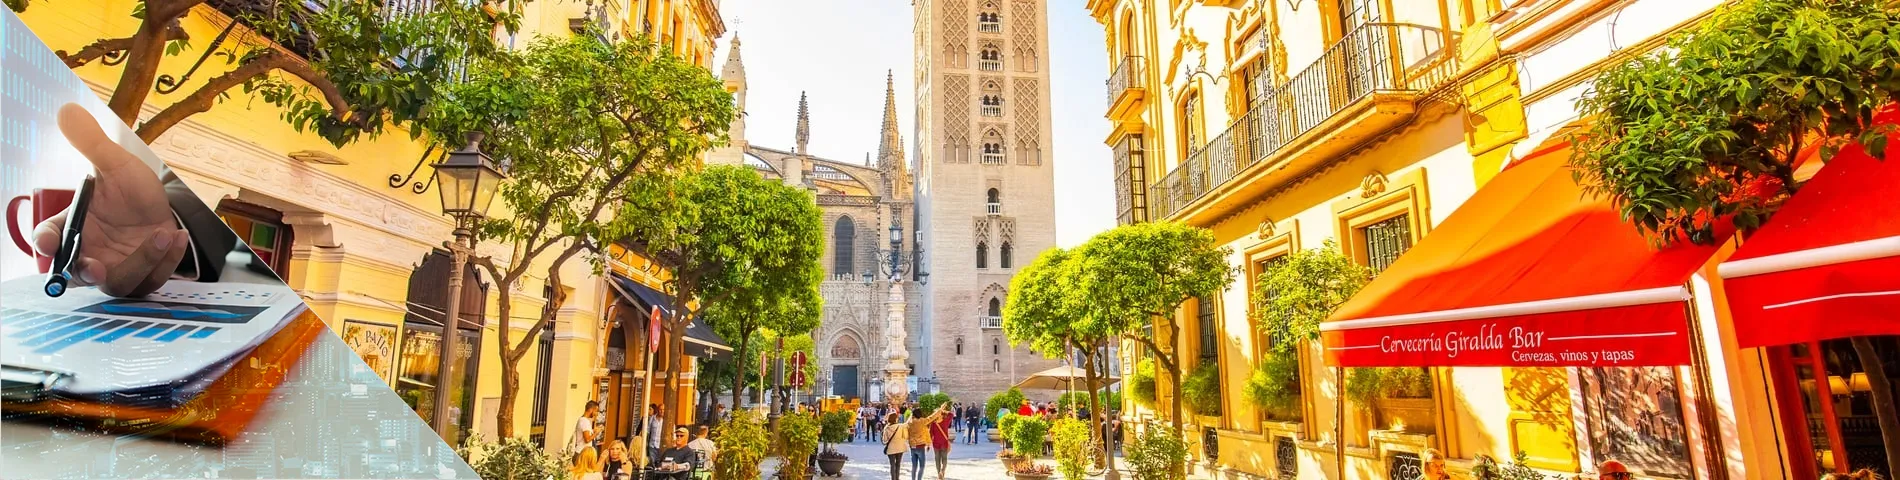 Sevilla - Spanska för Bank och finans